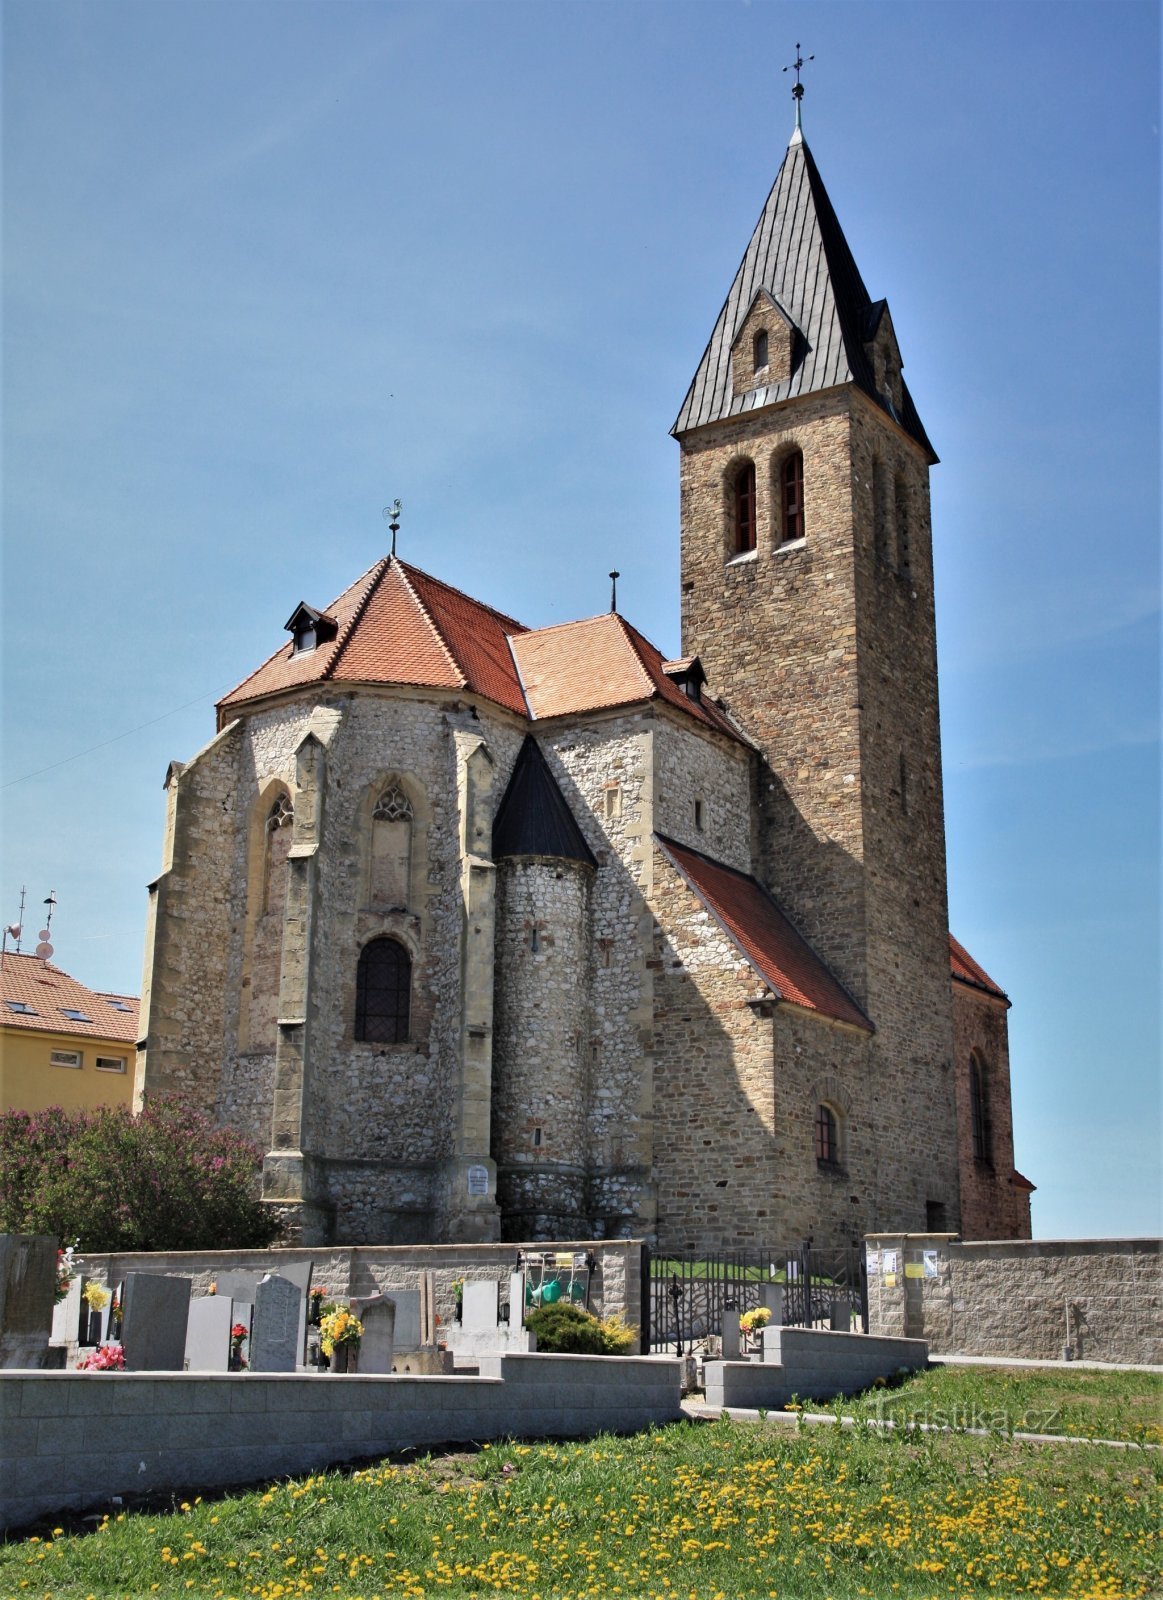 Jaječí - Εκκλησία του Αγ. Γιαν Κτίτελ